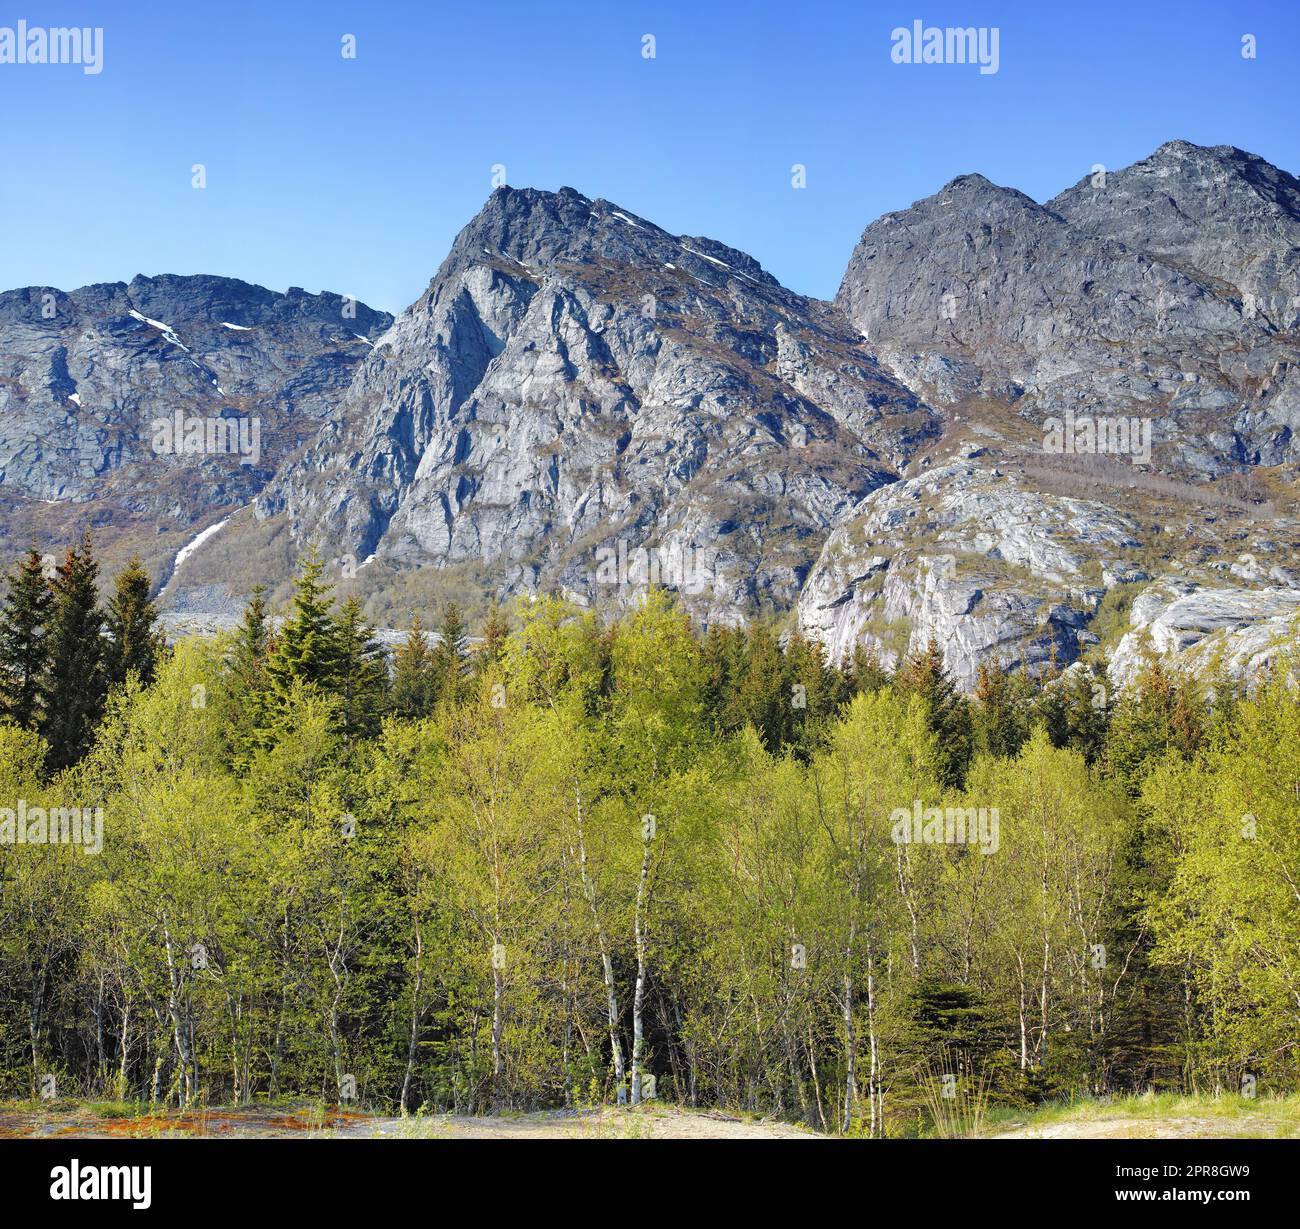 Malerische Berglandschaft mit Waldbäumen und blauem Himmel in Norwegen. Wunderschöne malerische Aussicht auf die Natur mit lebhaften üppigen Bäumen um ein berühmtes Naturdenkmal an einem sonnigen Tag Stockfoto